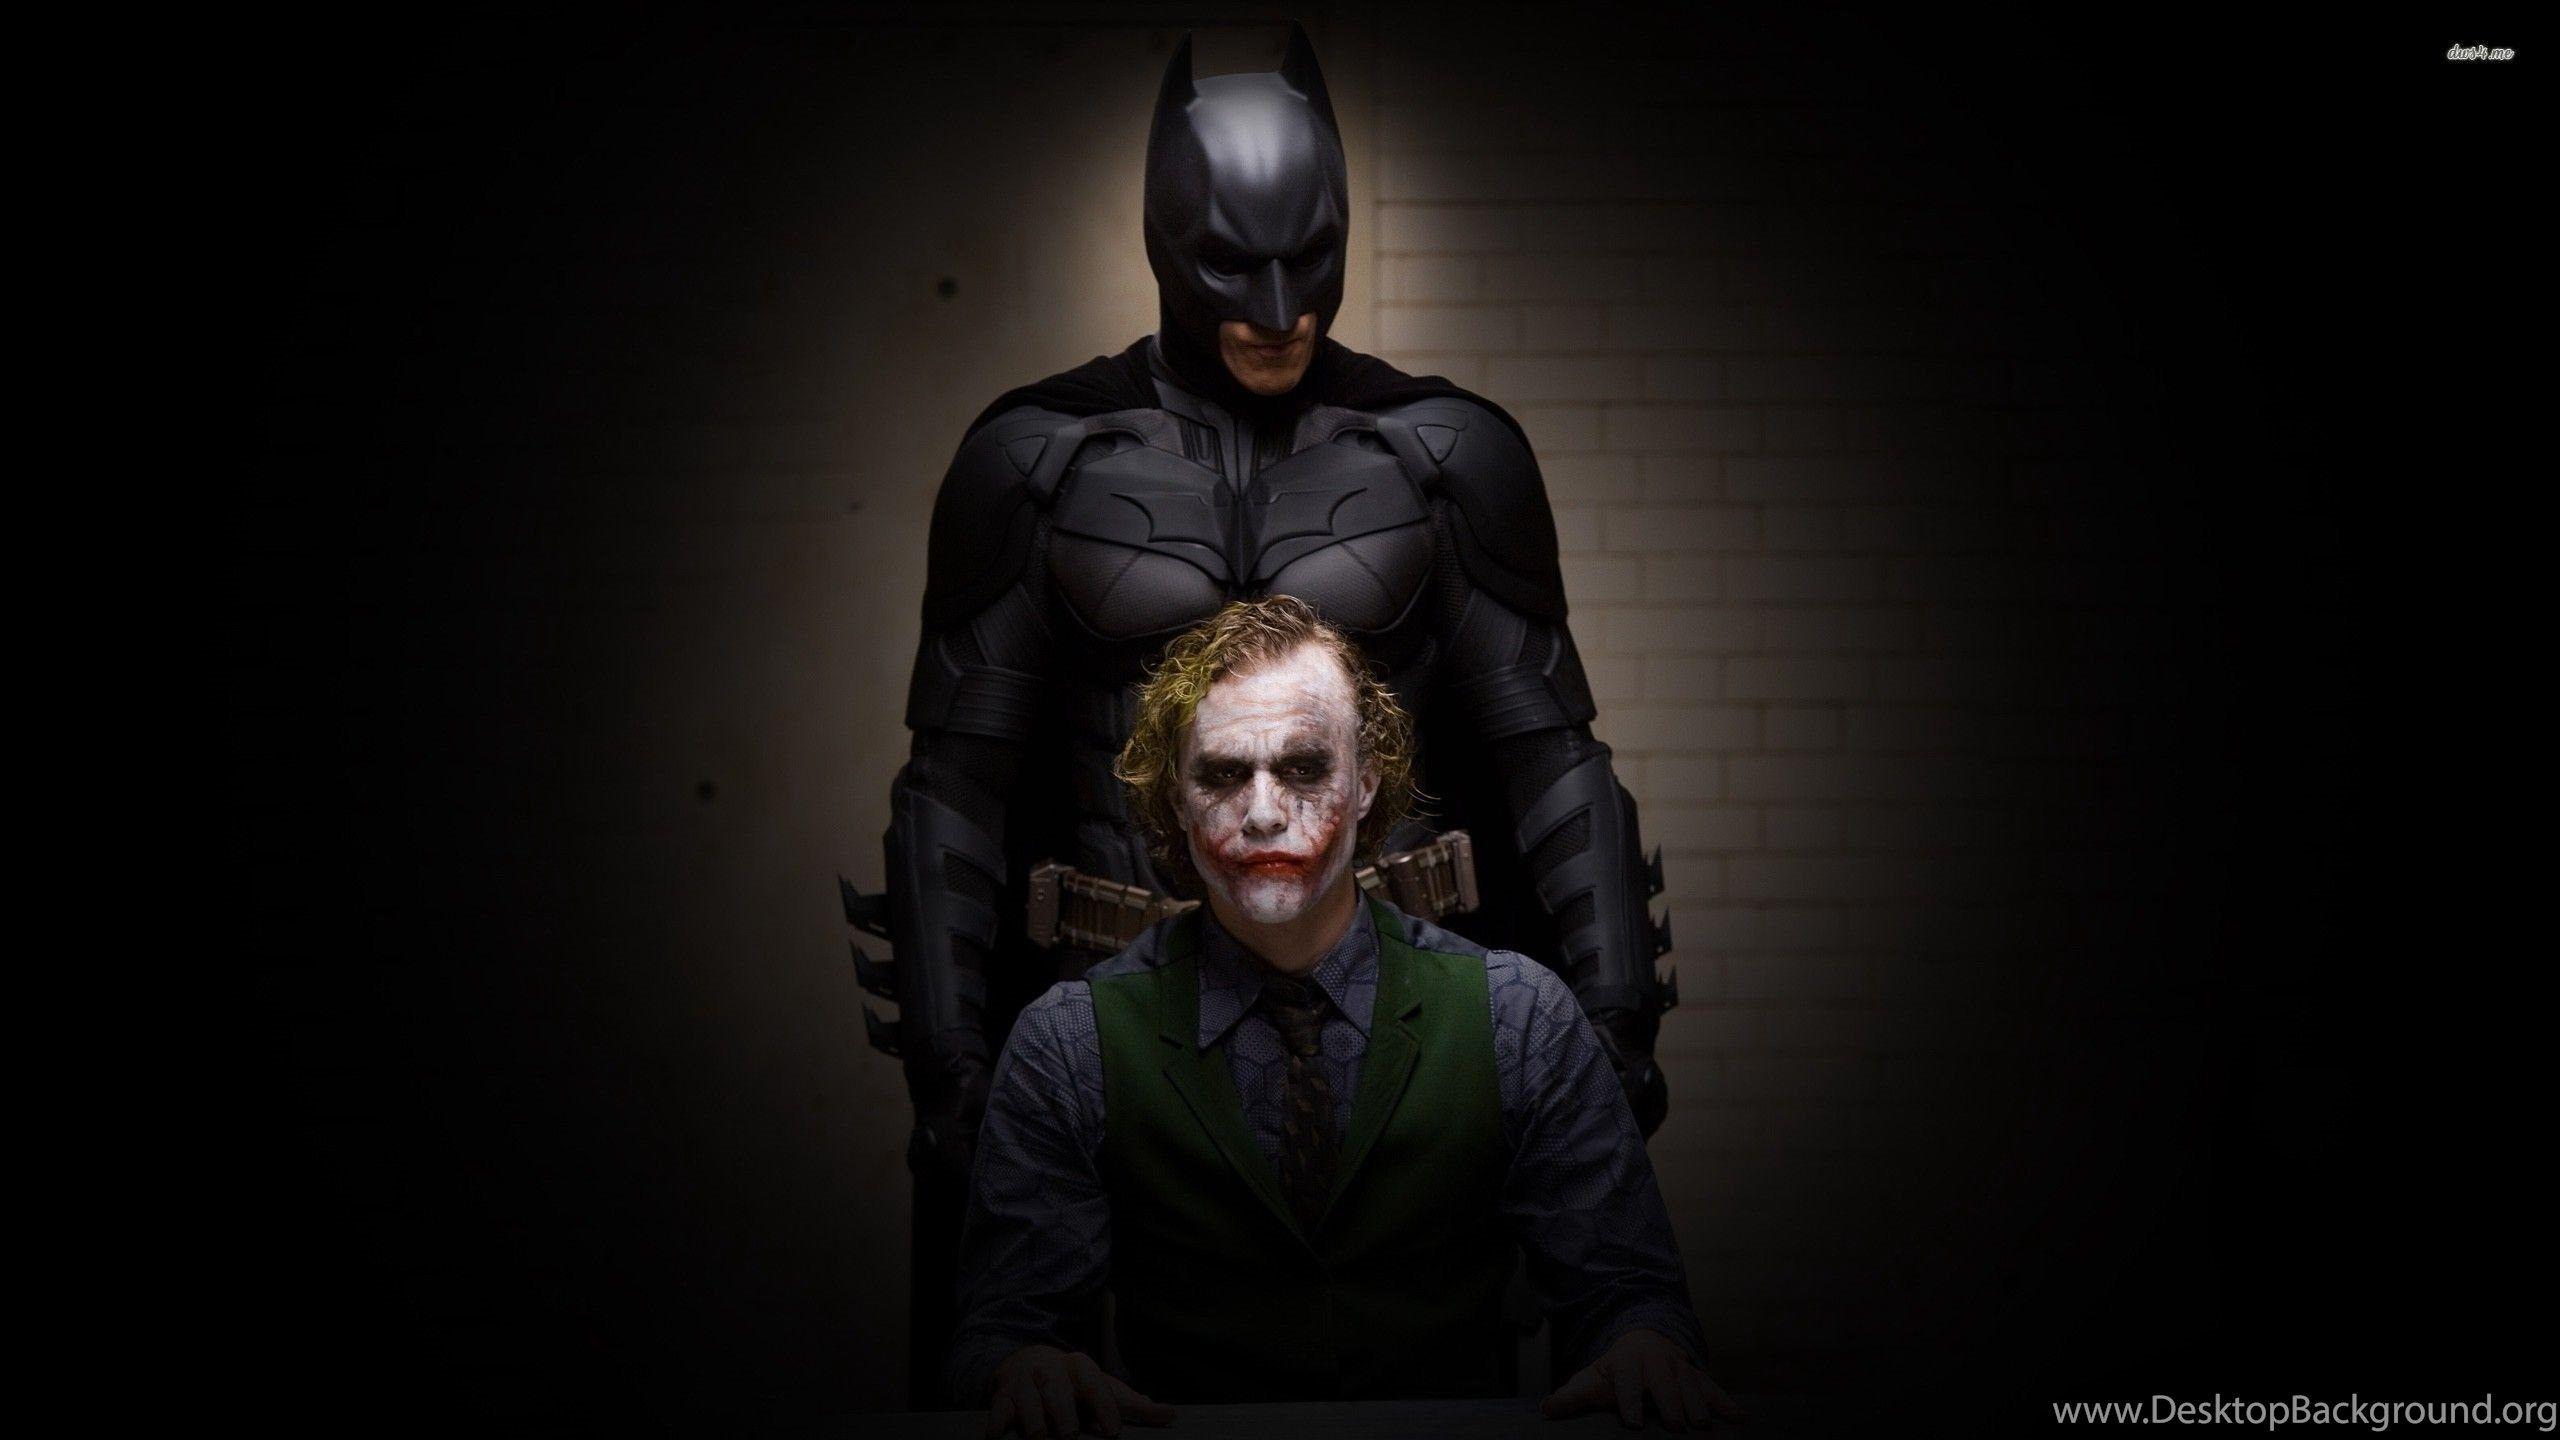  Dark  Knight  Joker  in 4K Ultra HD  Wallpapers  Top Free 